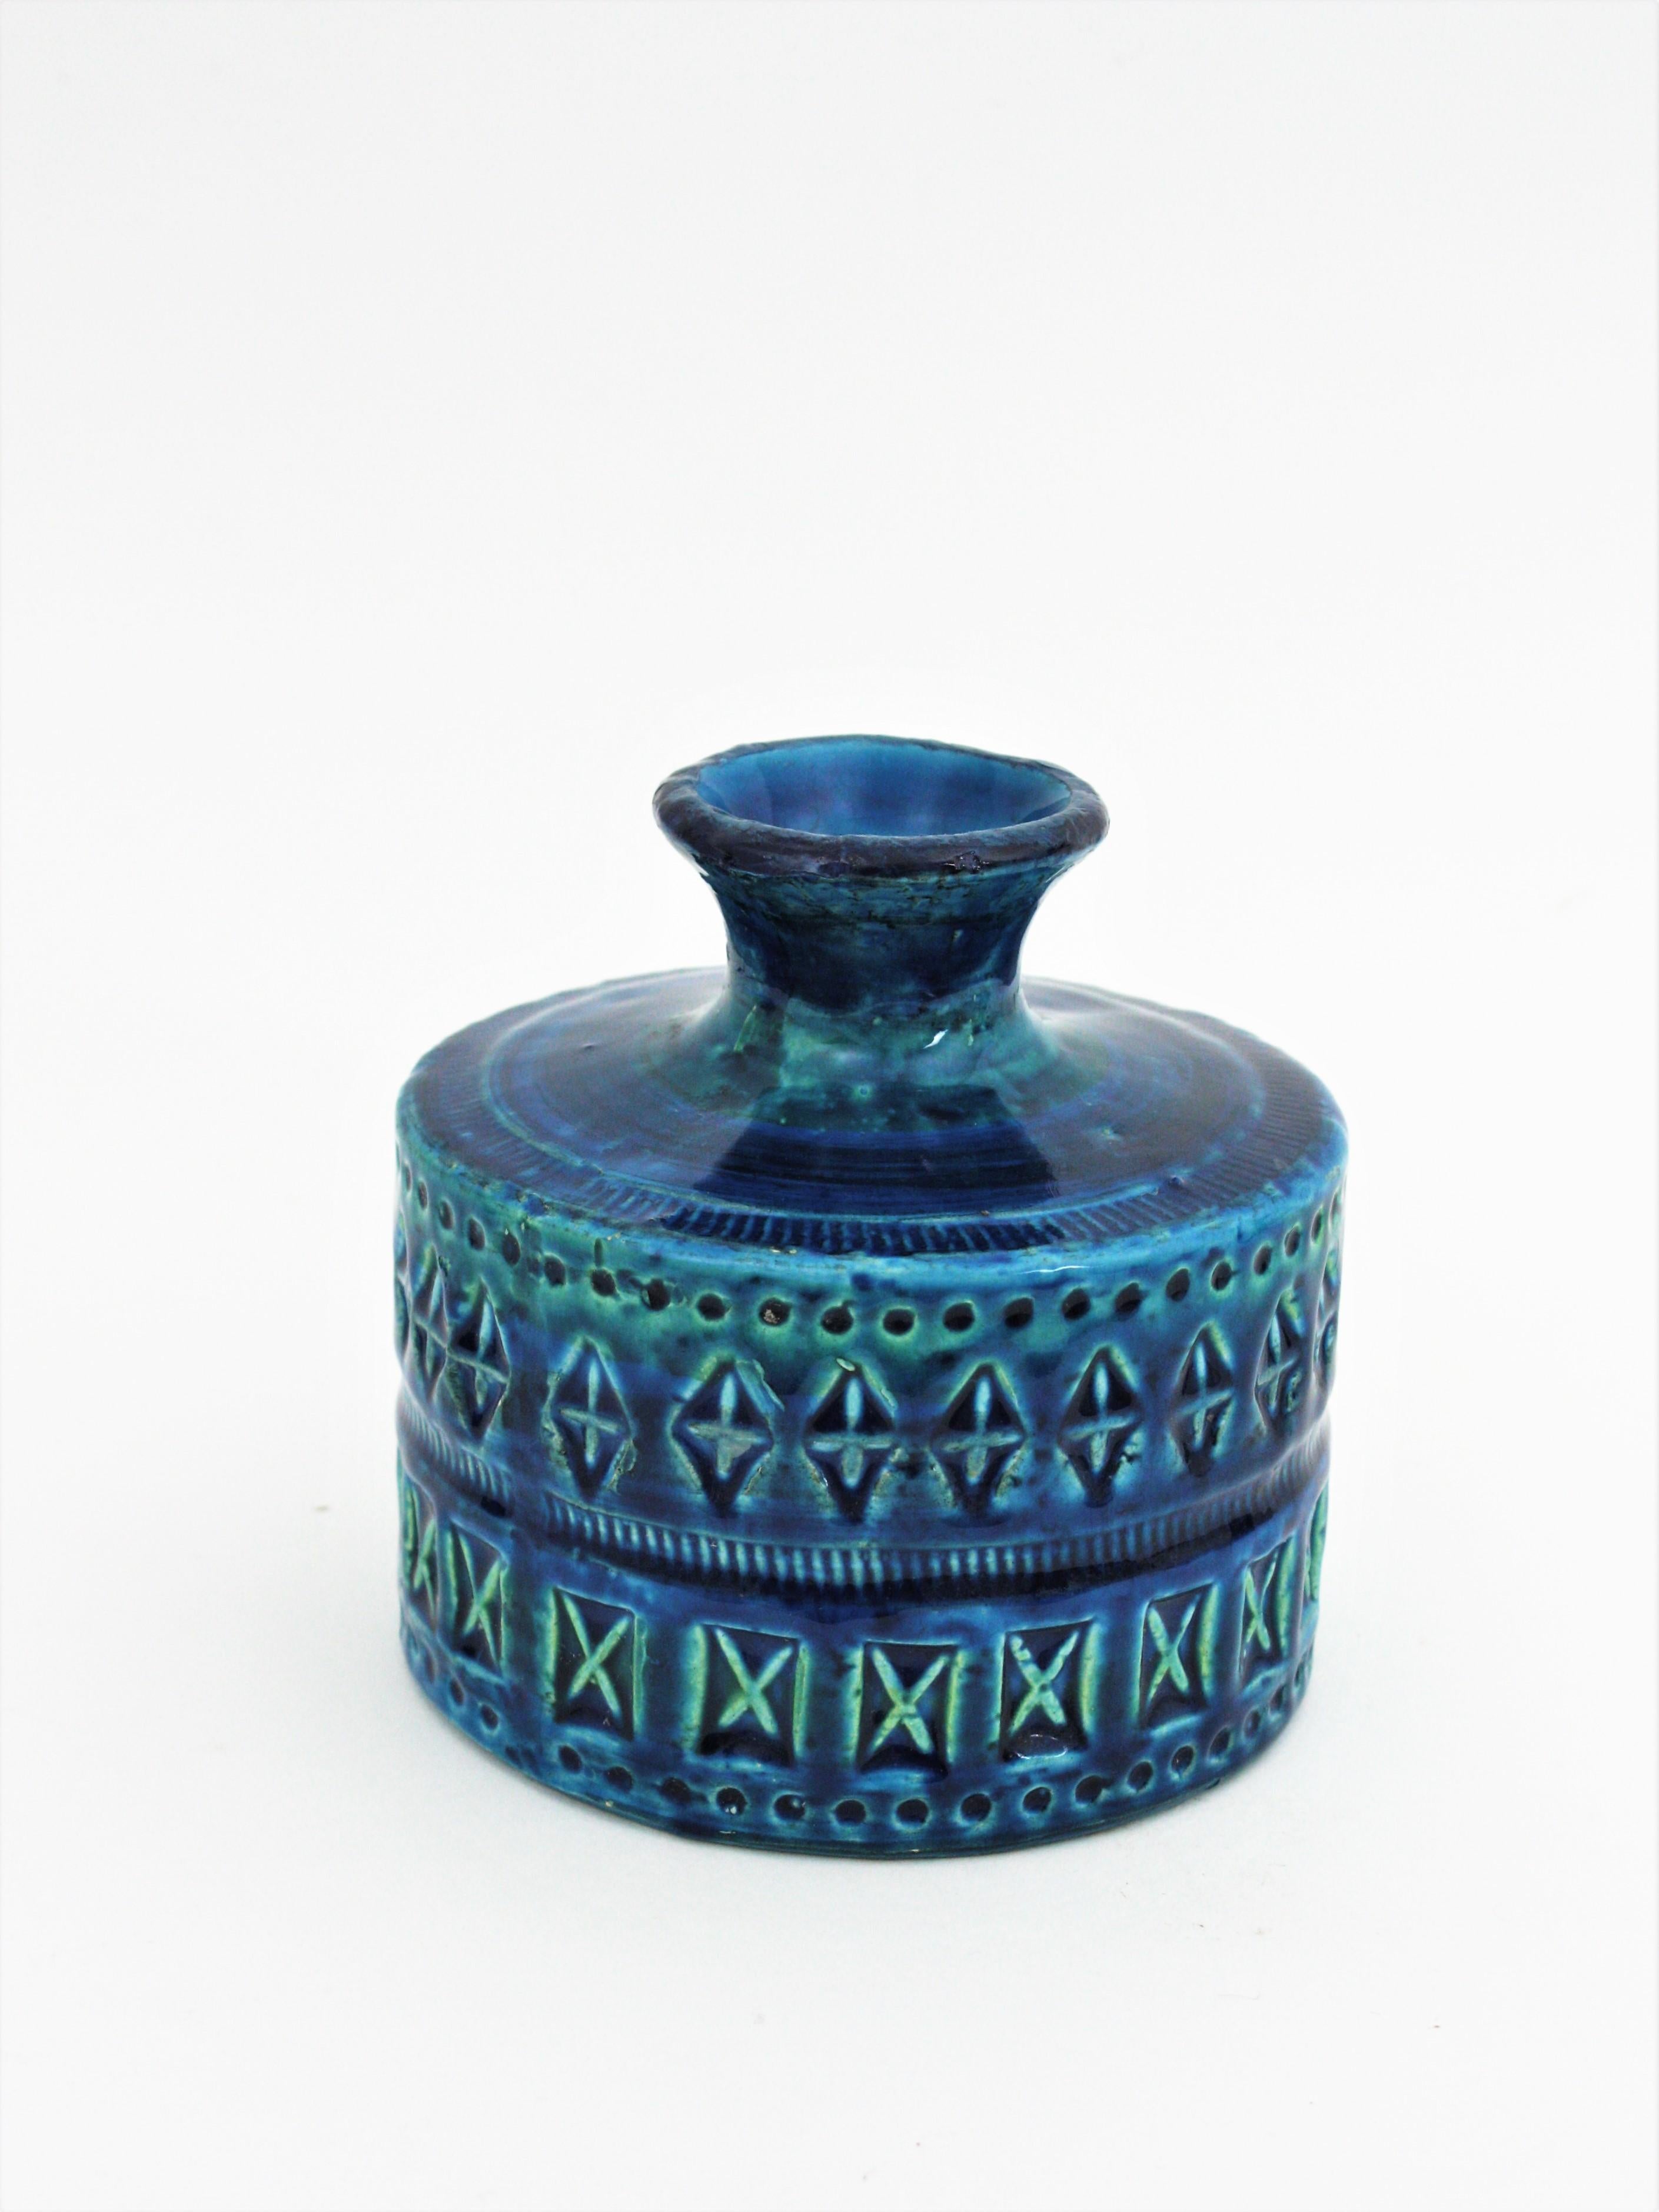 Glazed Bitossi Aldo Londi Rimini Blue Ceramic Set of Vase, Ashtray and Candleholder For Sale